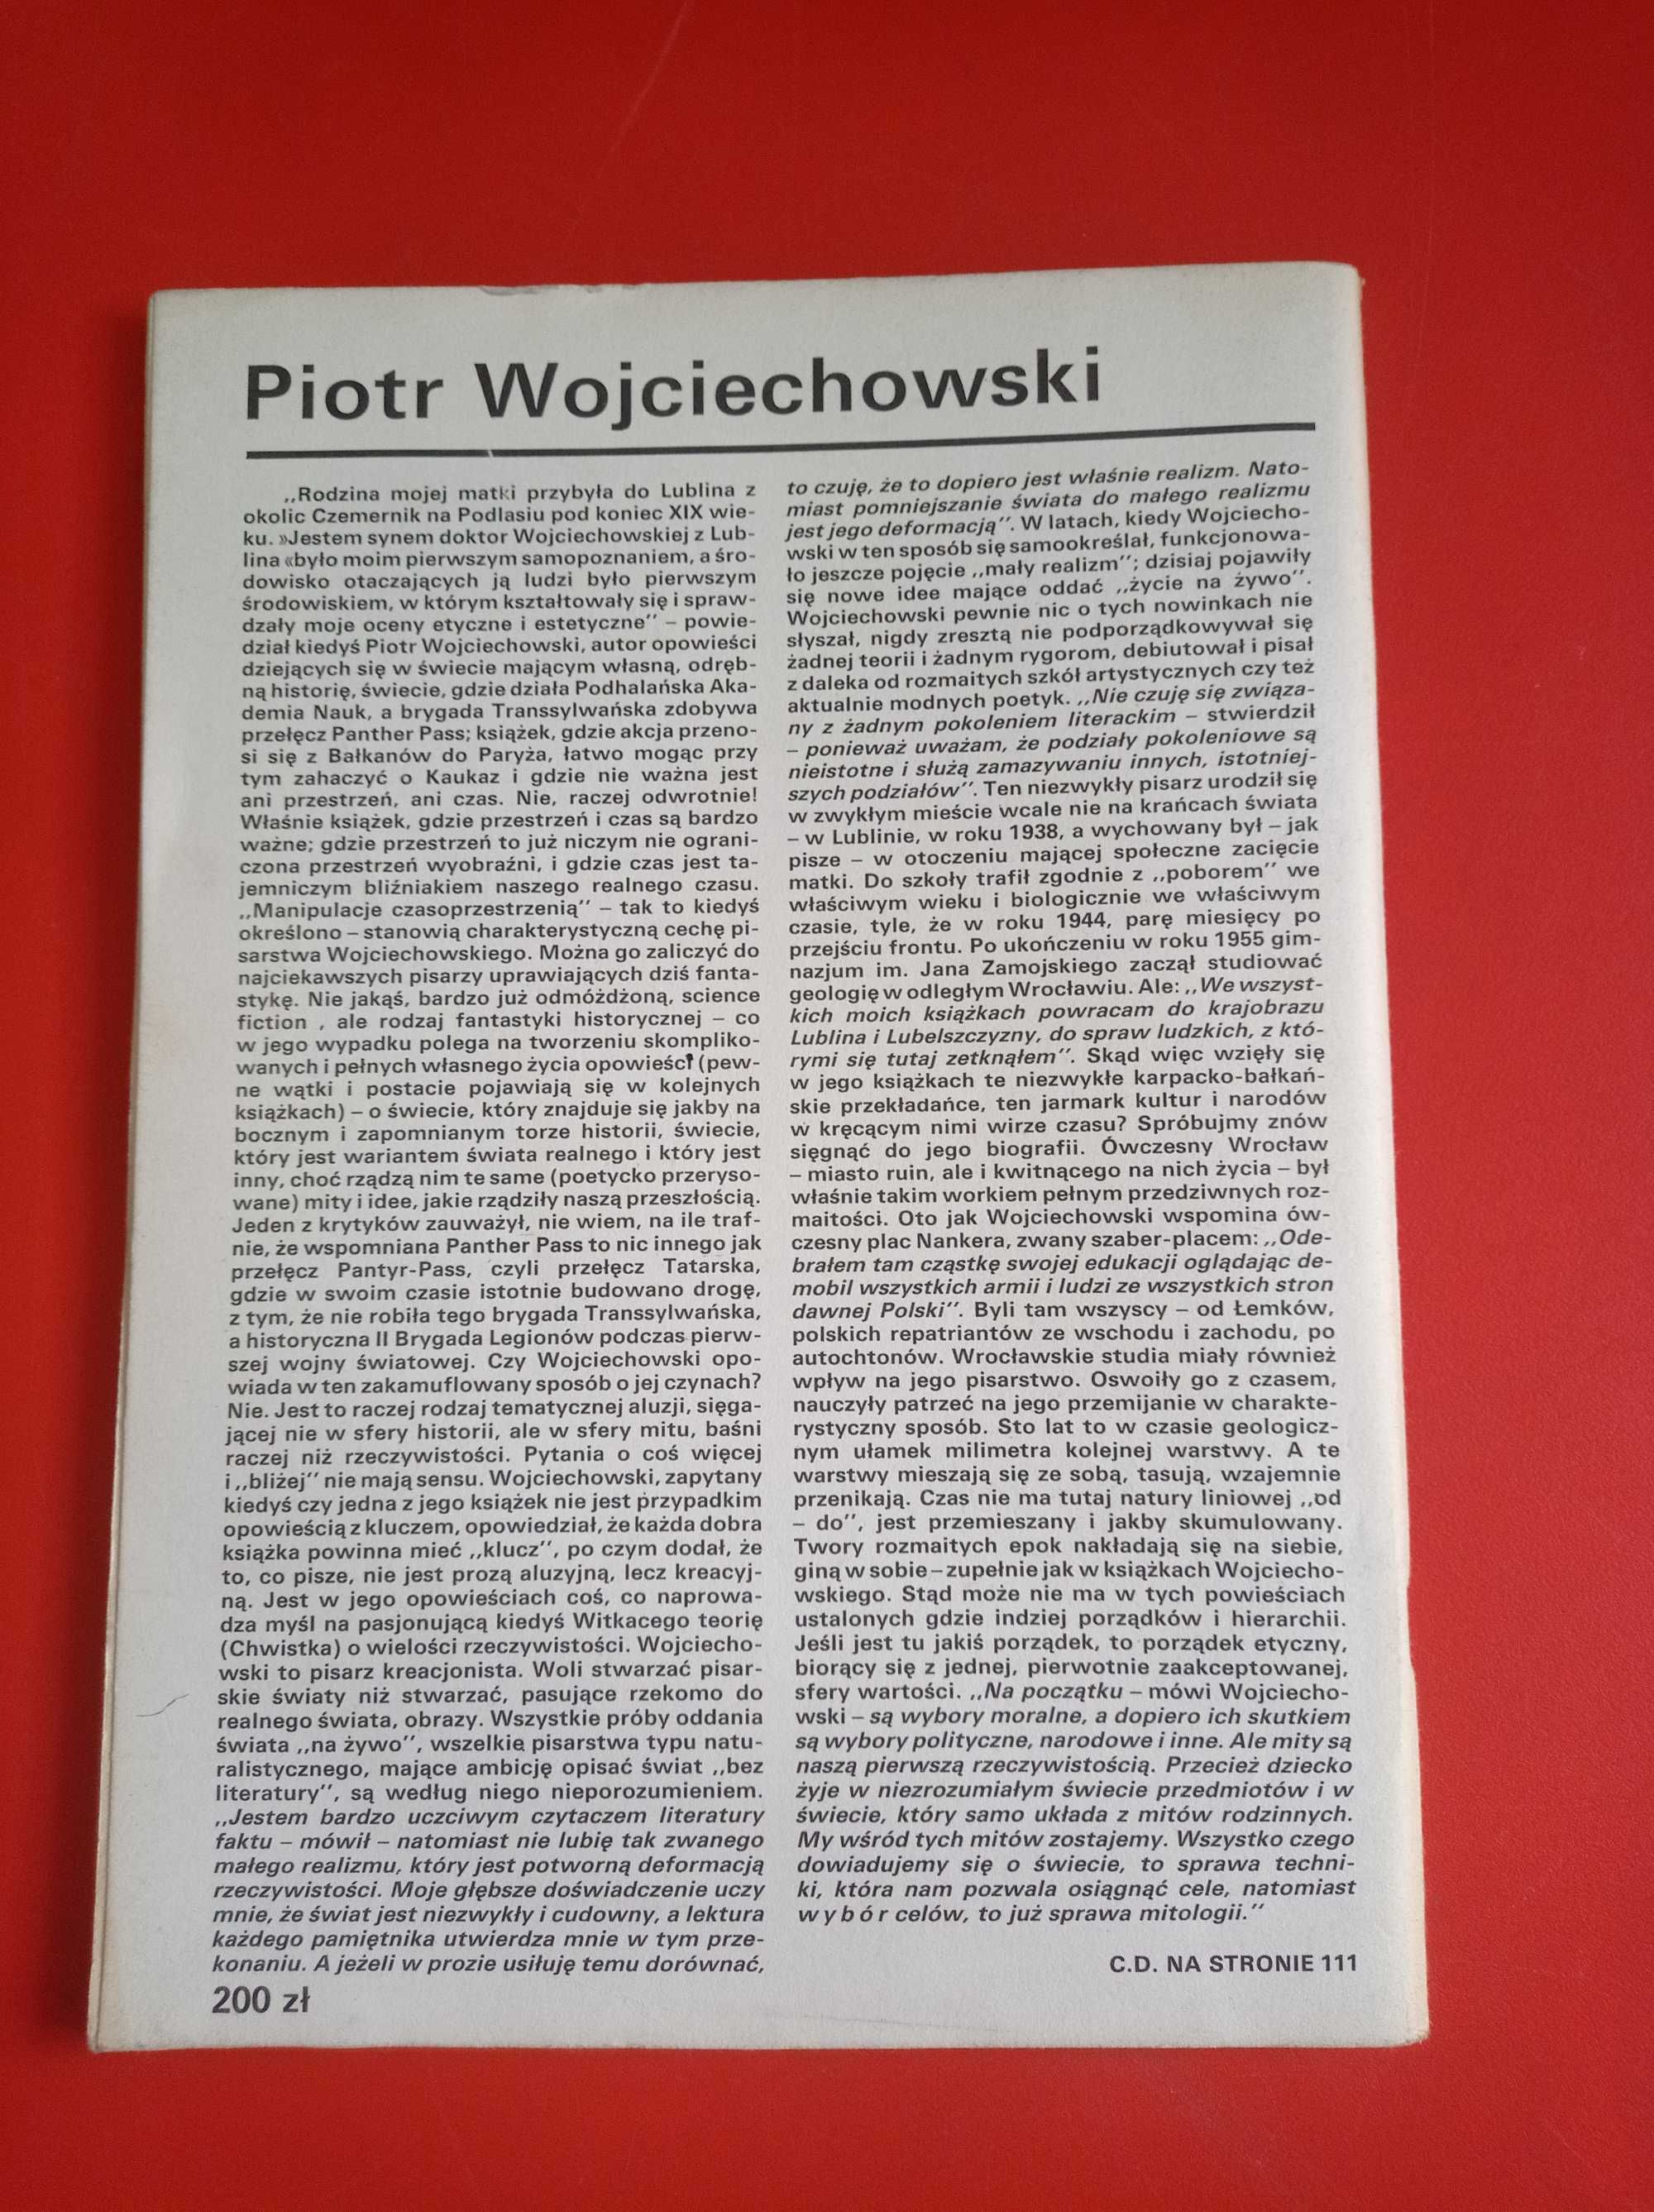 Nowe książki, nr 1 styczeń 1989, Piotr Wojciechowski